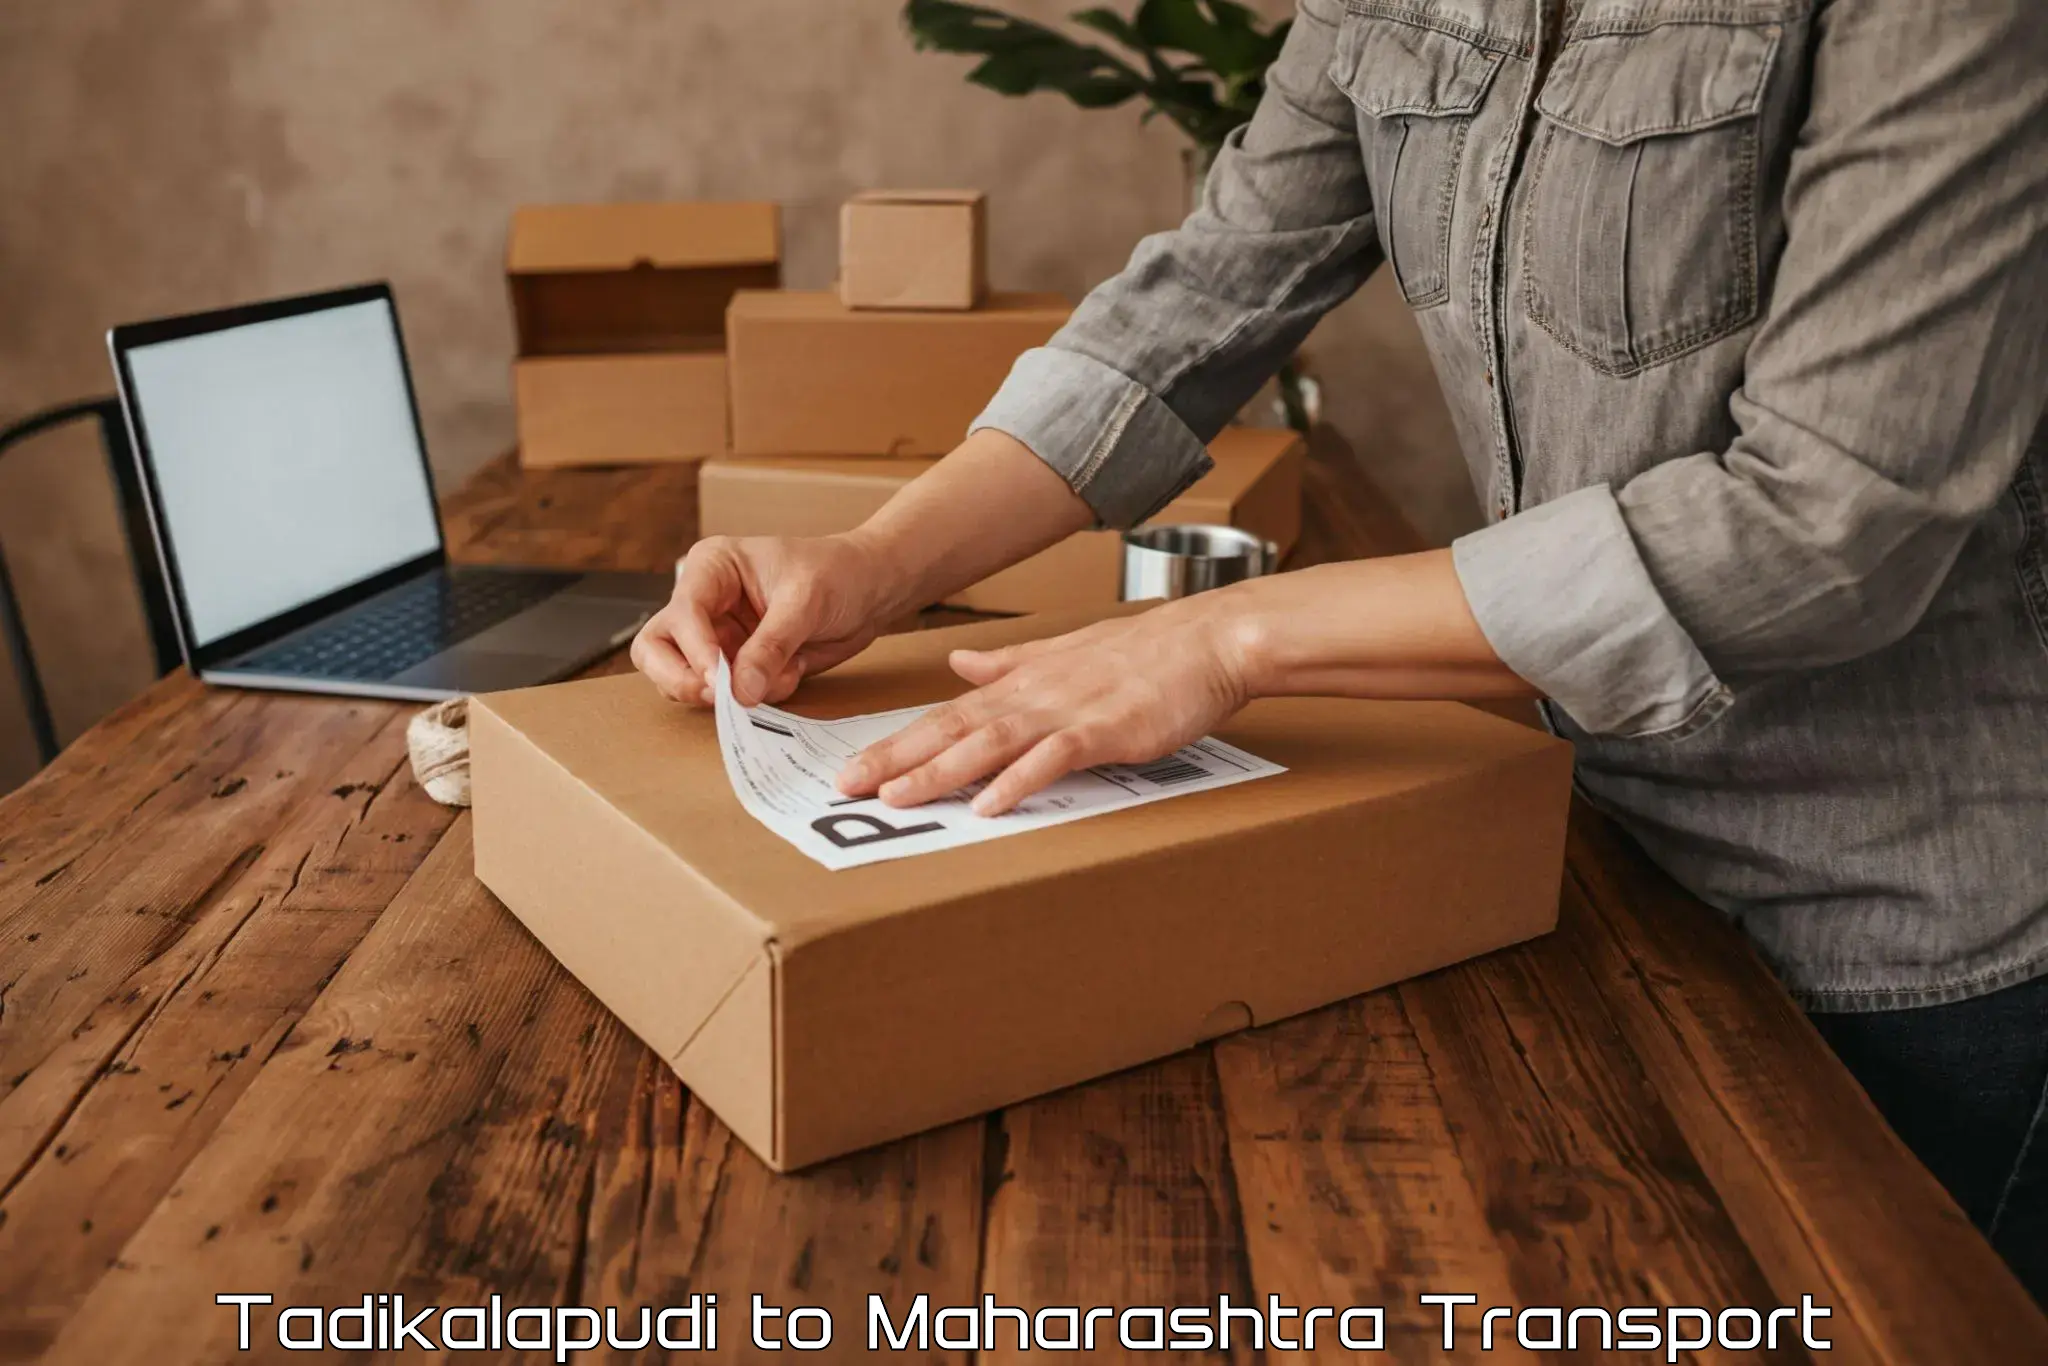 Transport in sharing in Tadikalapudi to Mumbai Port